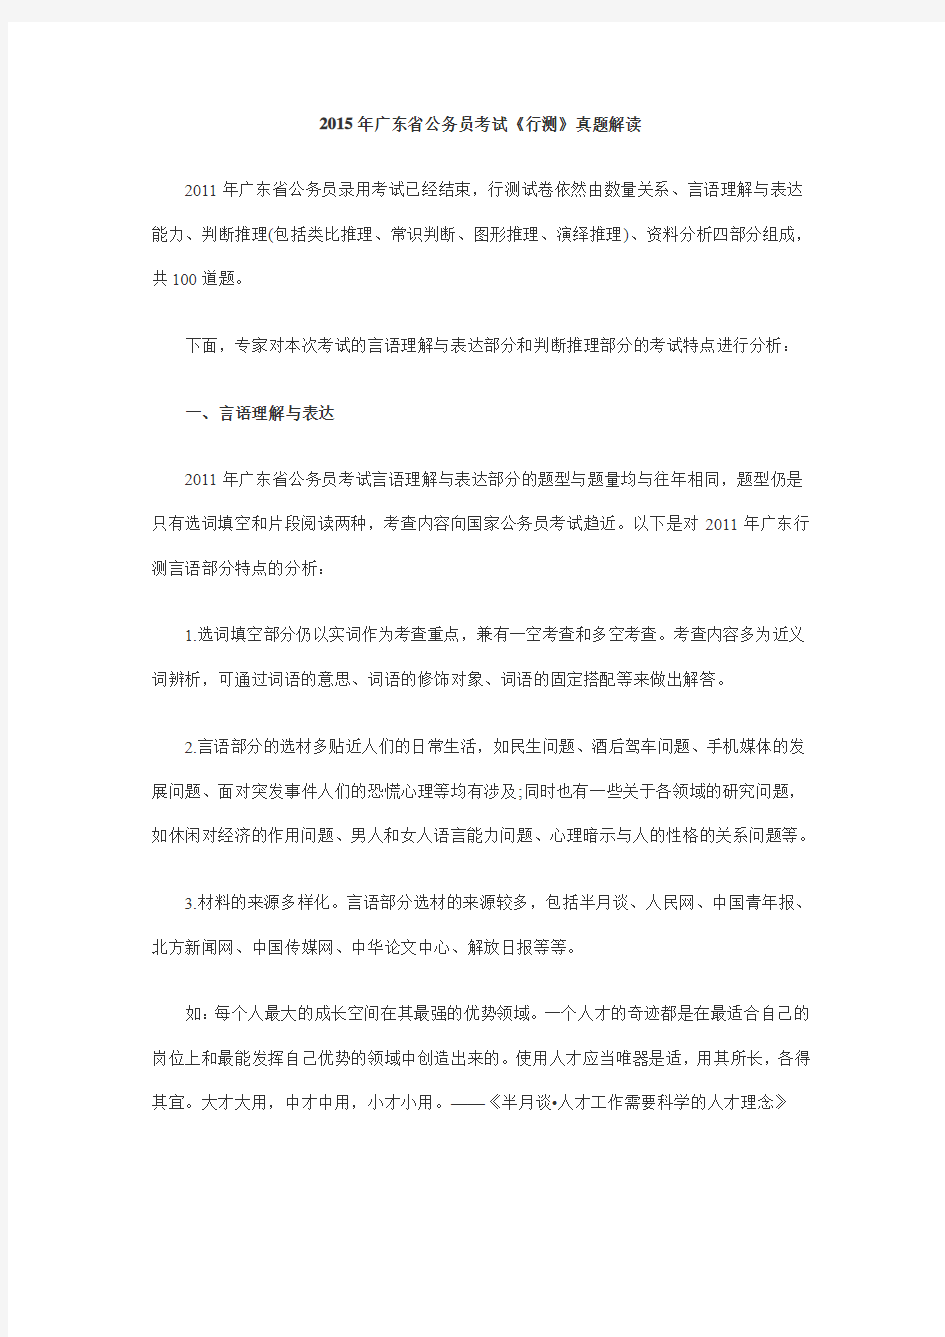 2015年广东省公务员考试真题及答案解析汇总